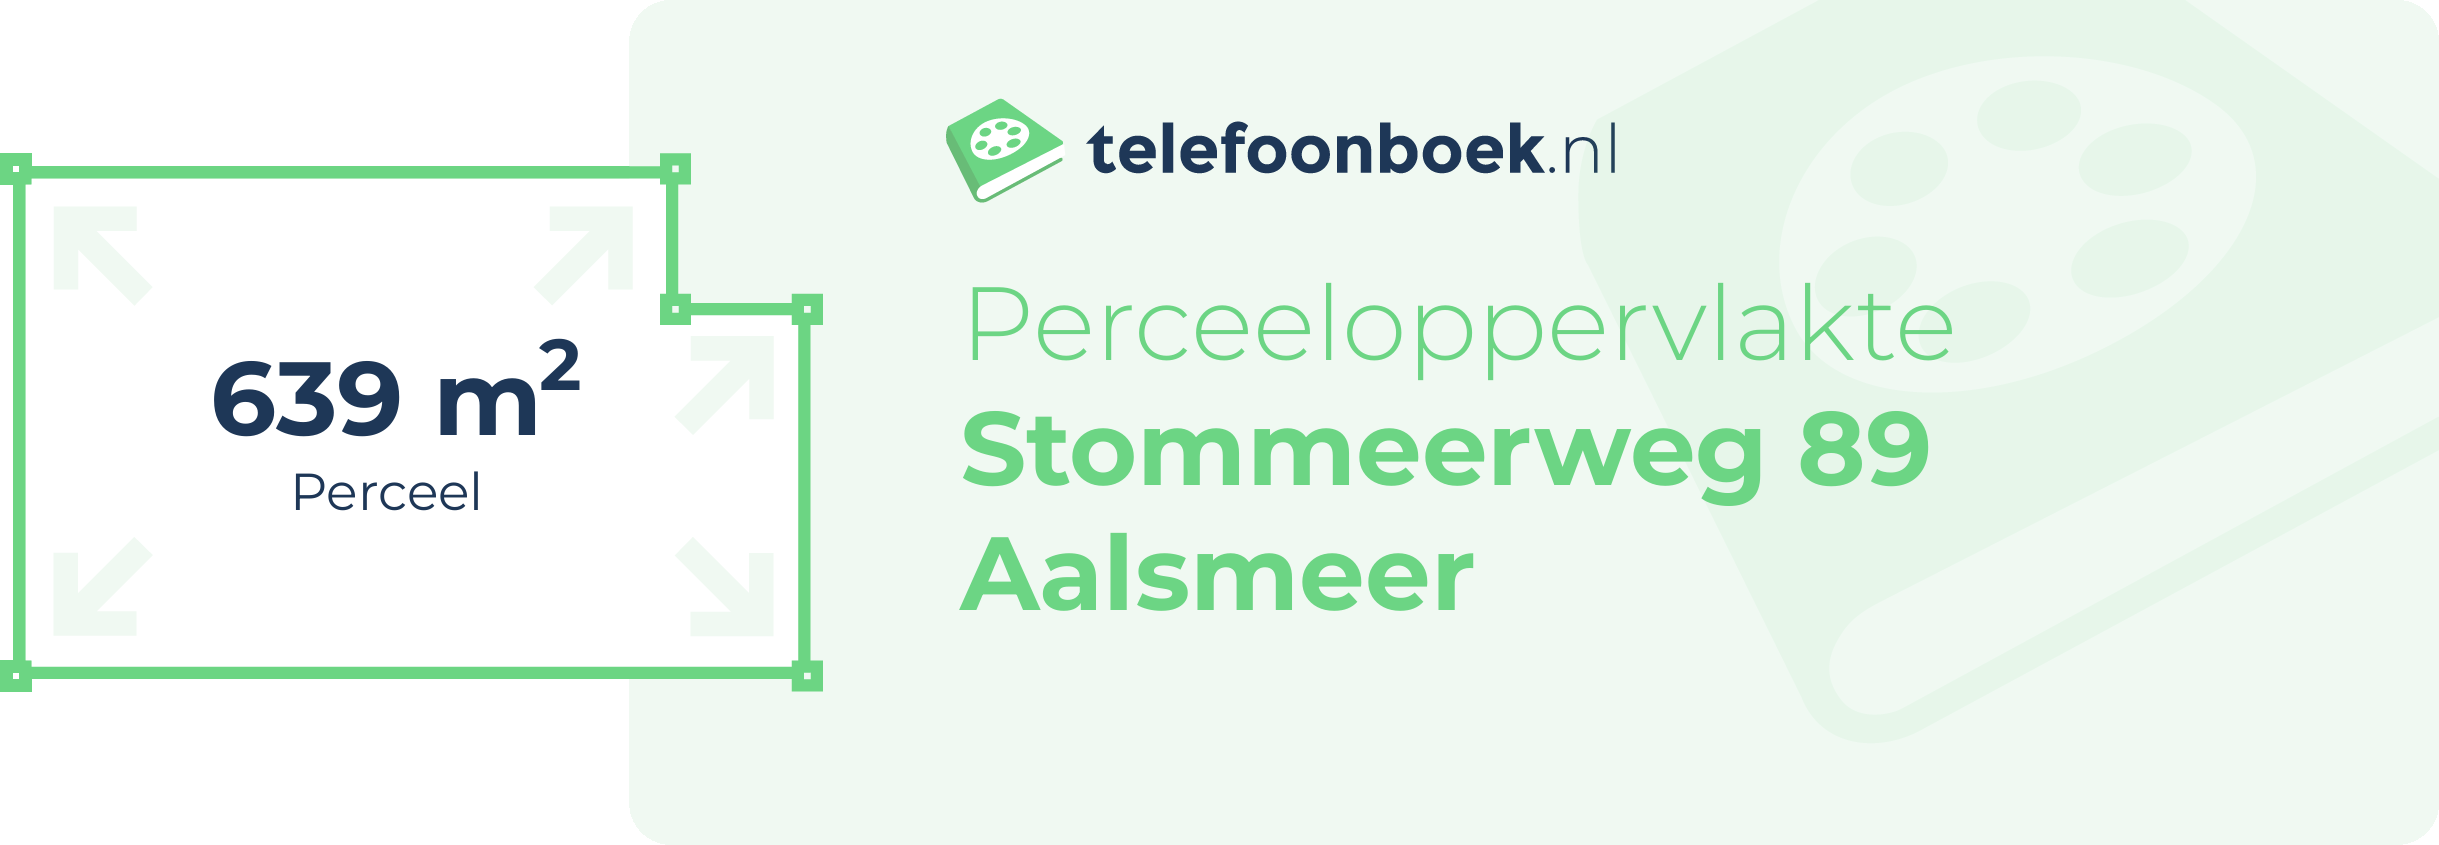 Perceeloppervlakte Stommeerweg 89 Aalsmeer